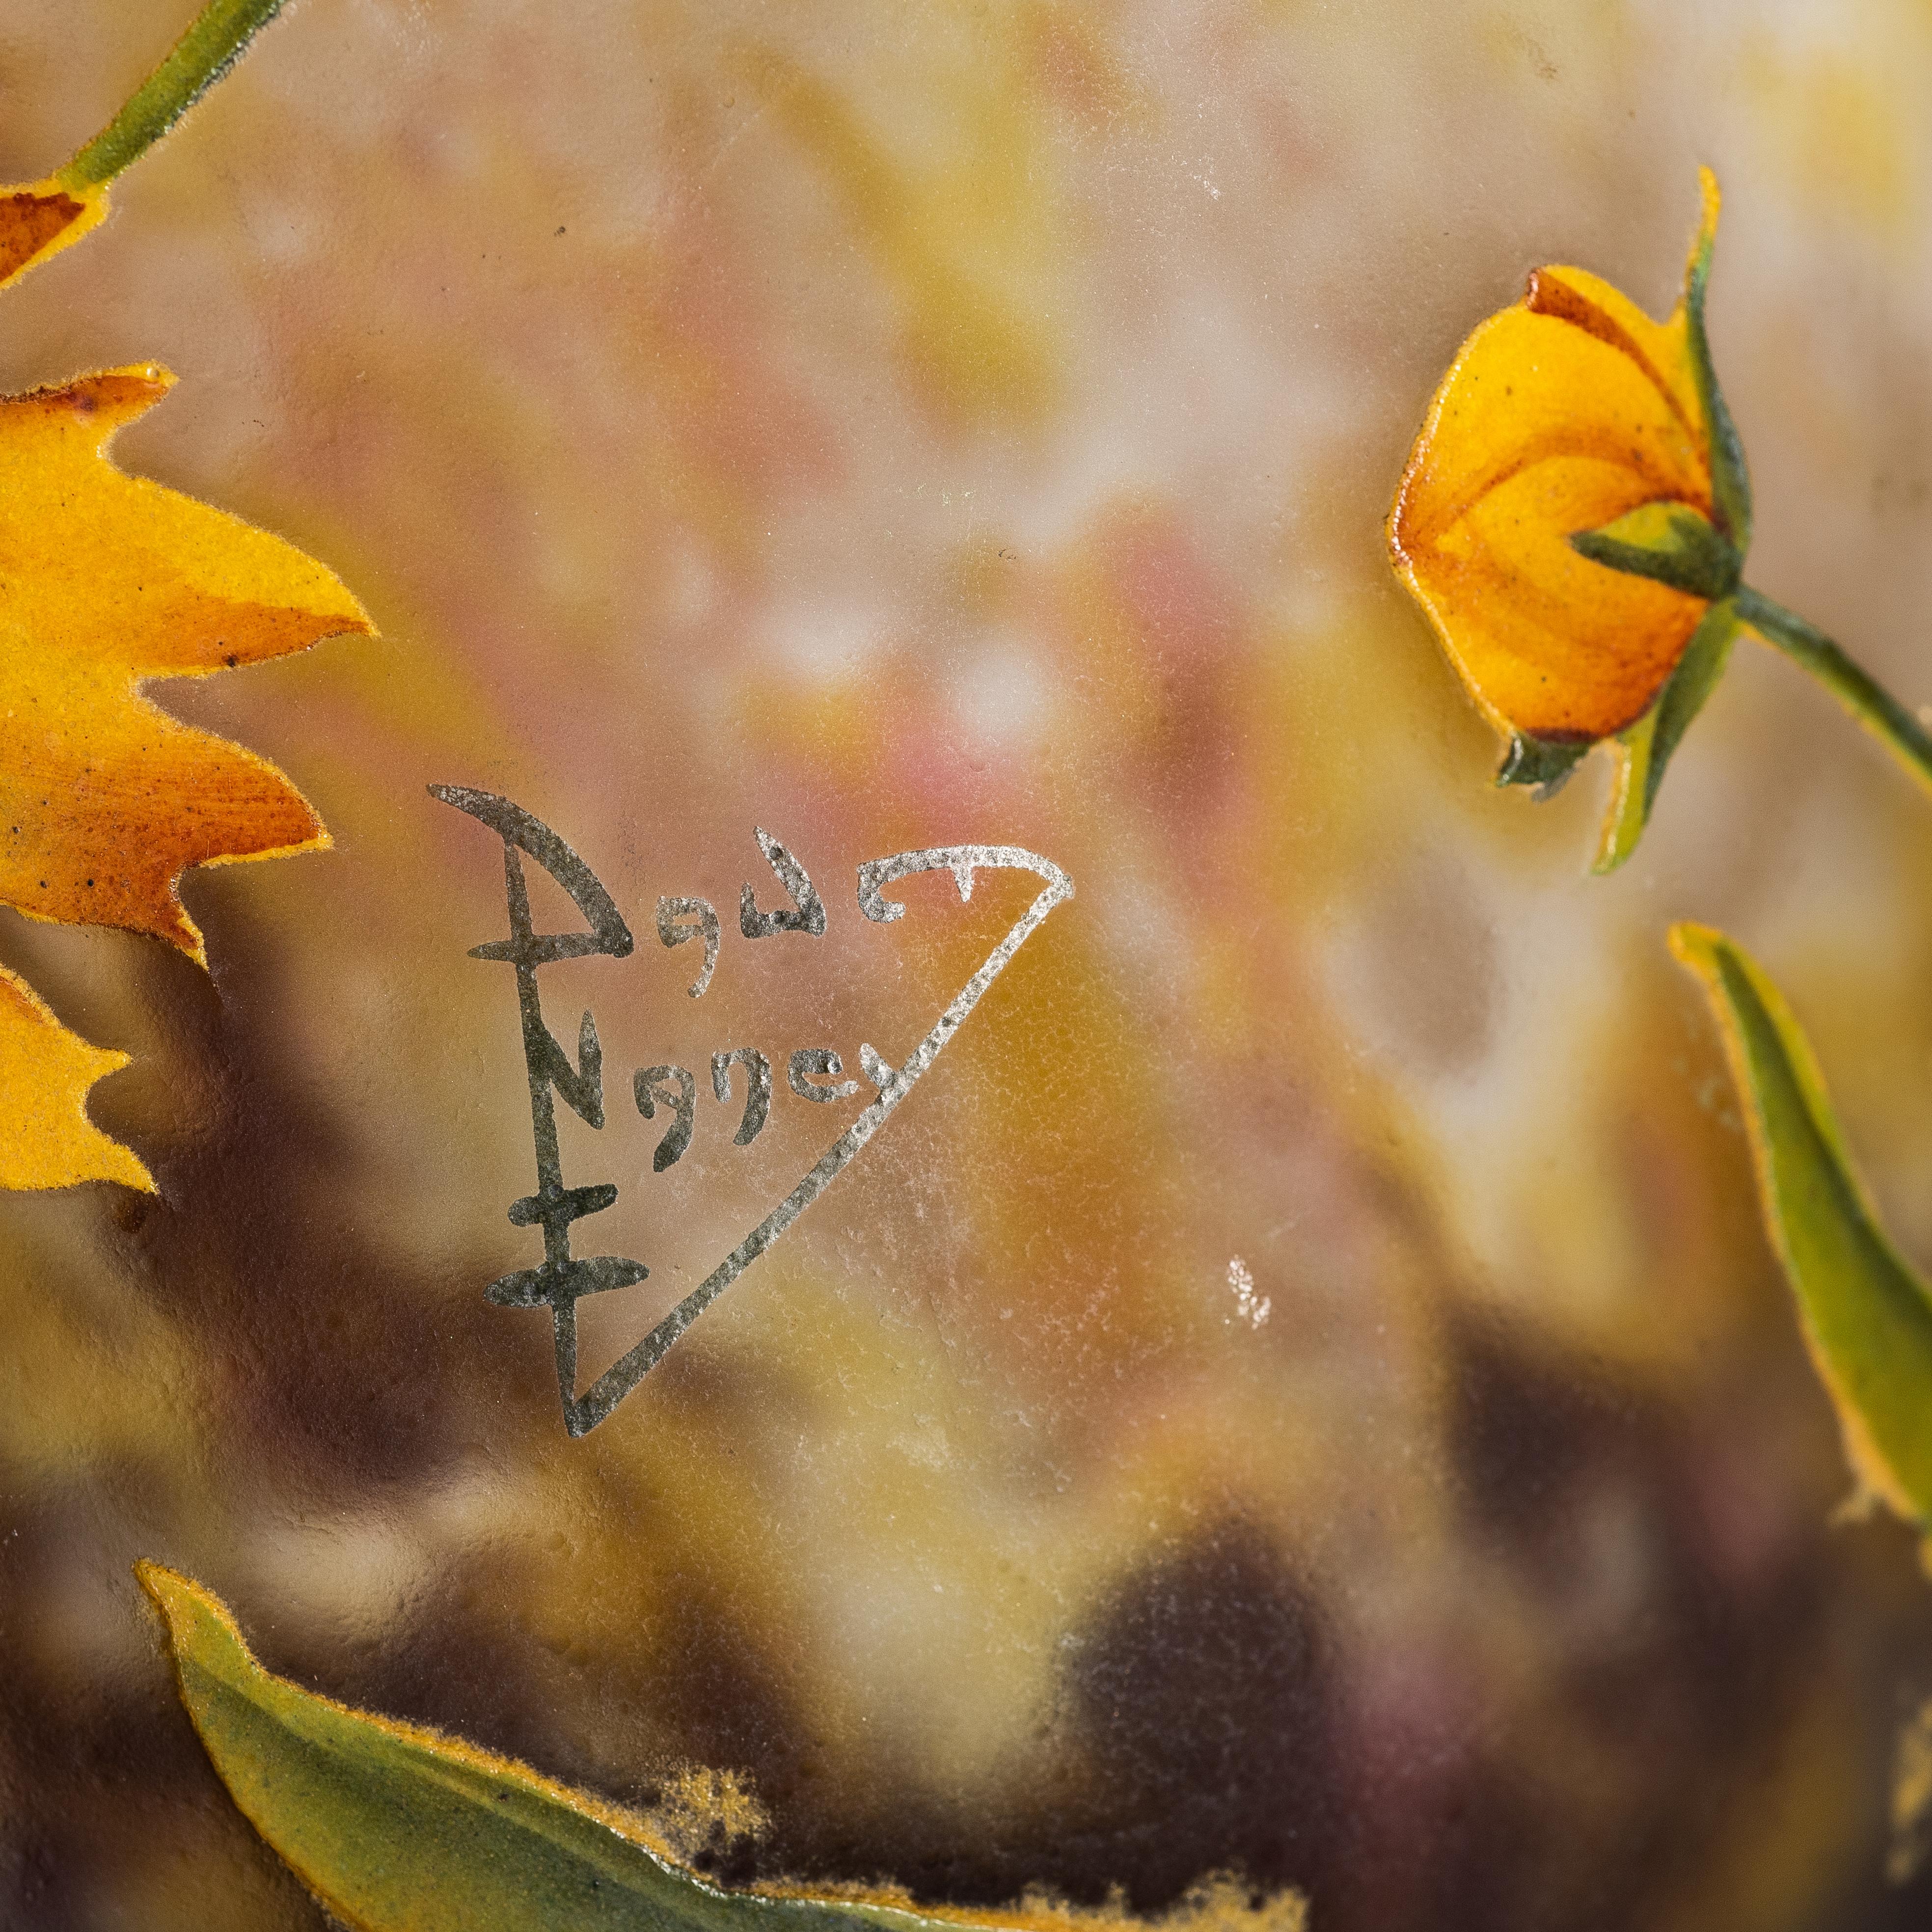 Vase en verre Daum Nancy émaillé et décoré à l'intérieur, 
France, vers 1900-1910
décoré de fleurs jaunes et de feuilles vertes sur un fond marbré rose, blanc et brun.
signé avec marque peinte Daum Nancy avec croix de